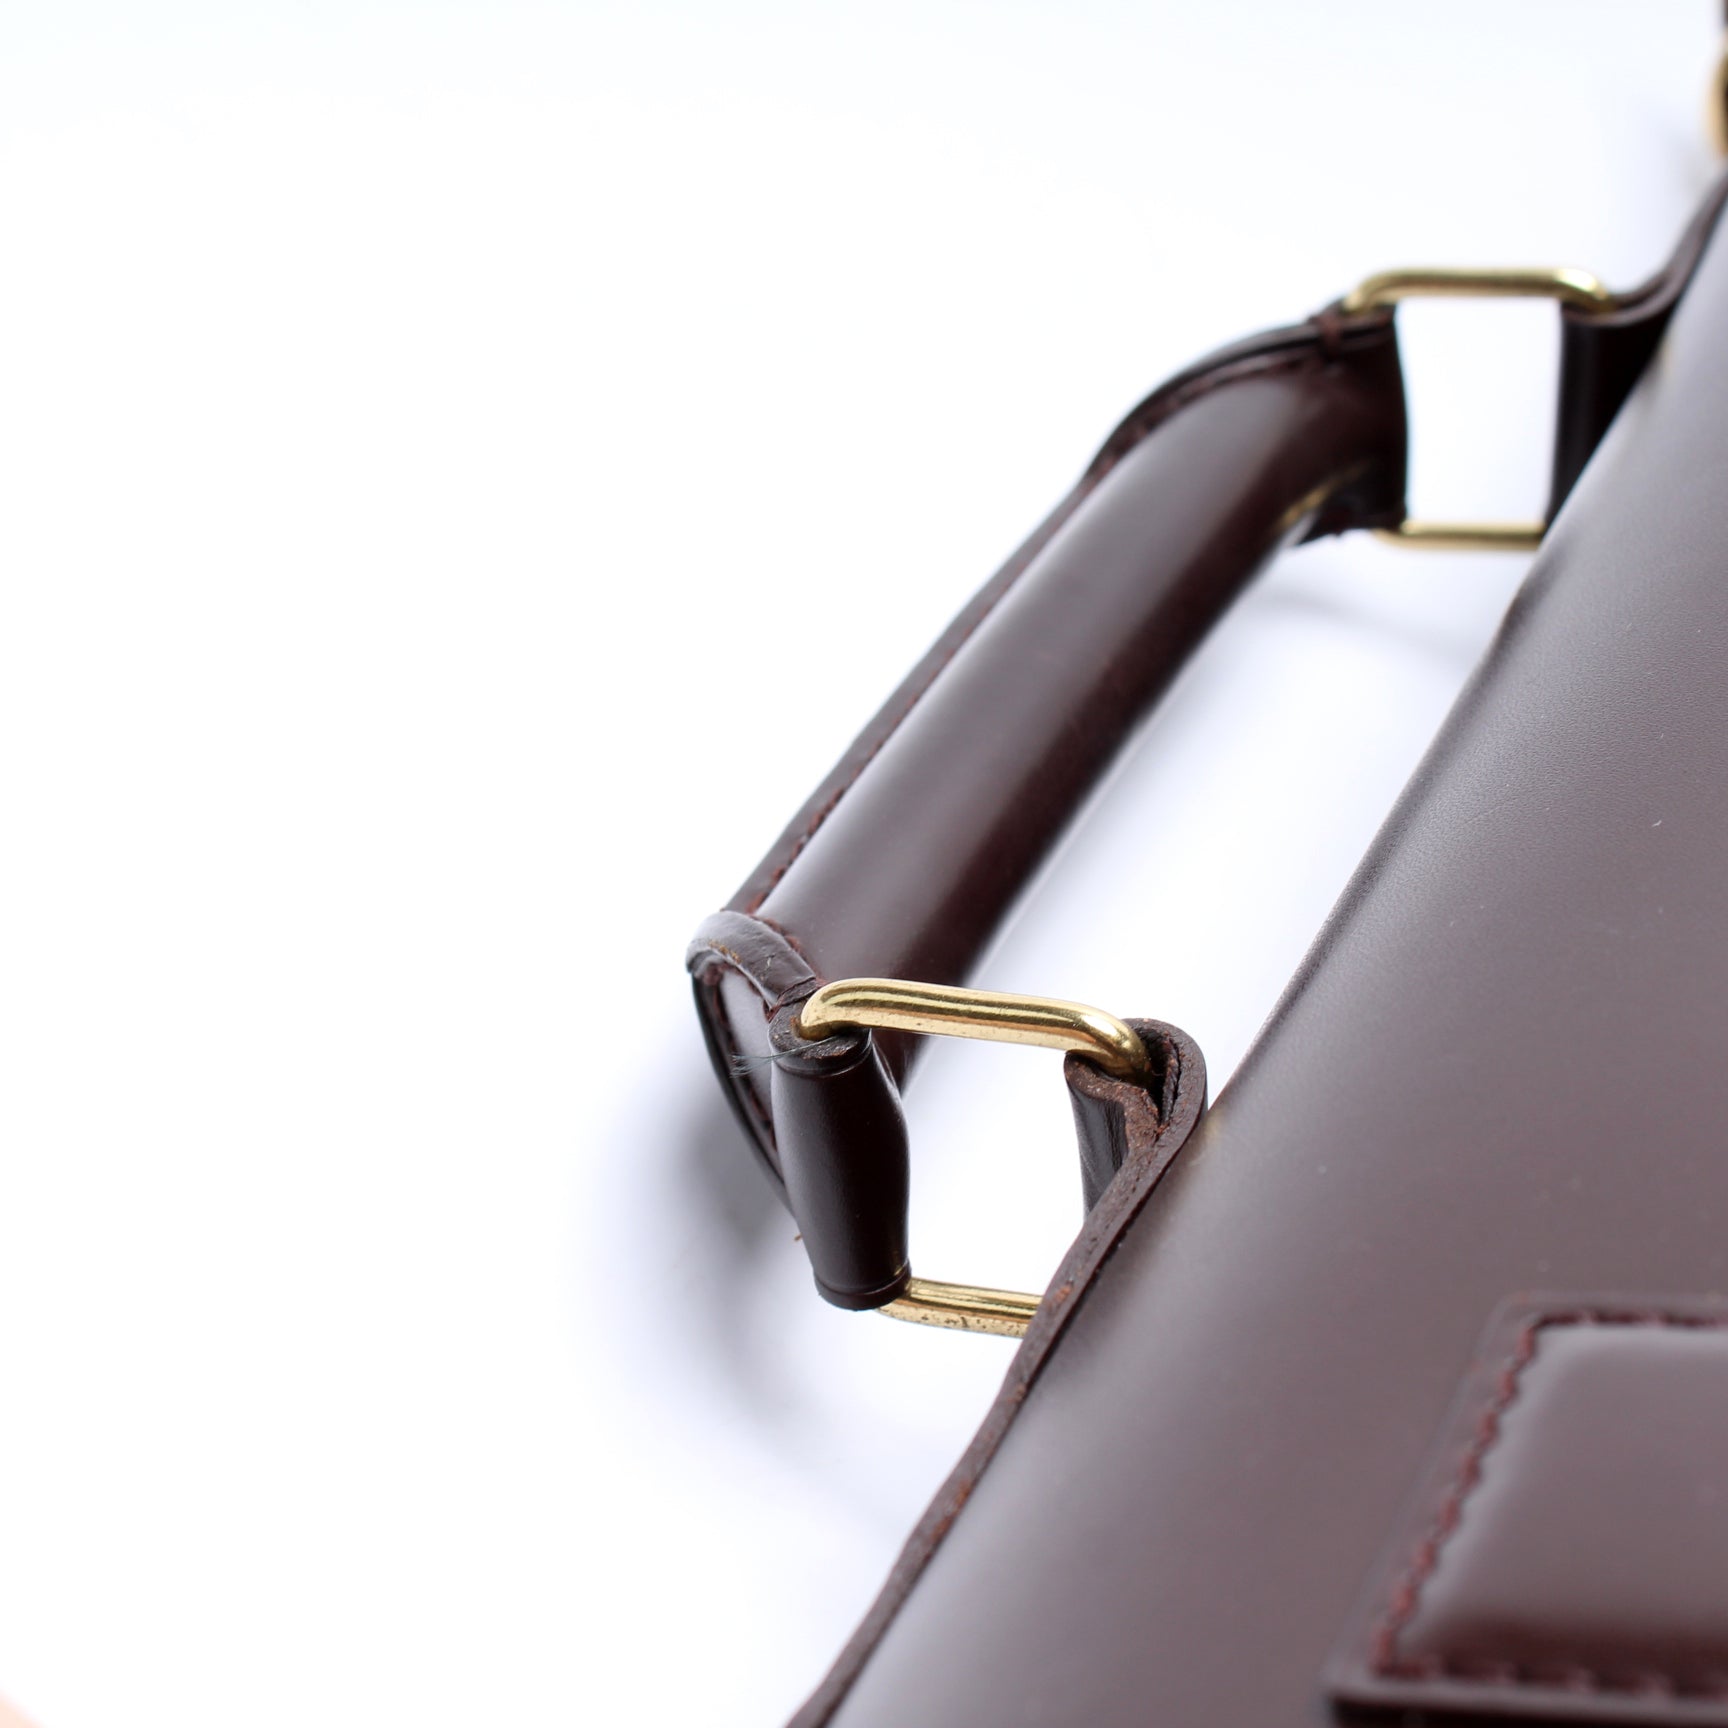 West End PM Damier Ebene – Keeks Designer Handbags